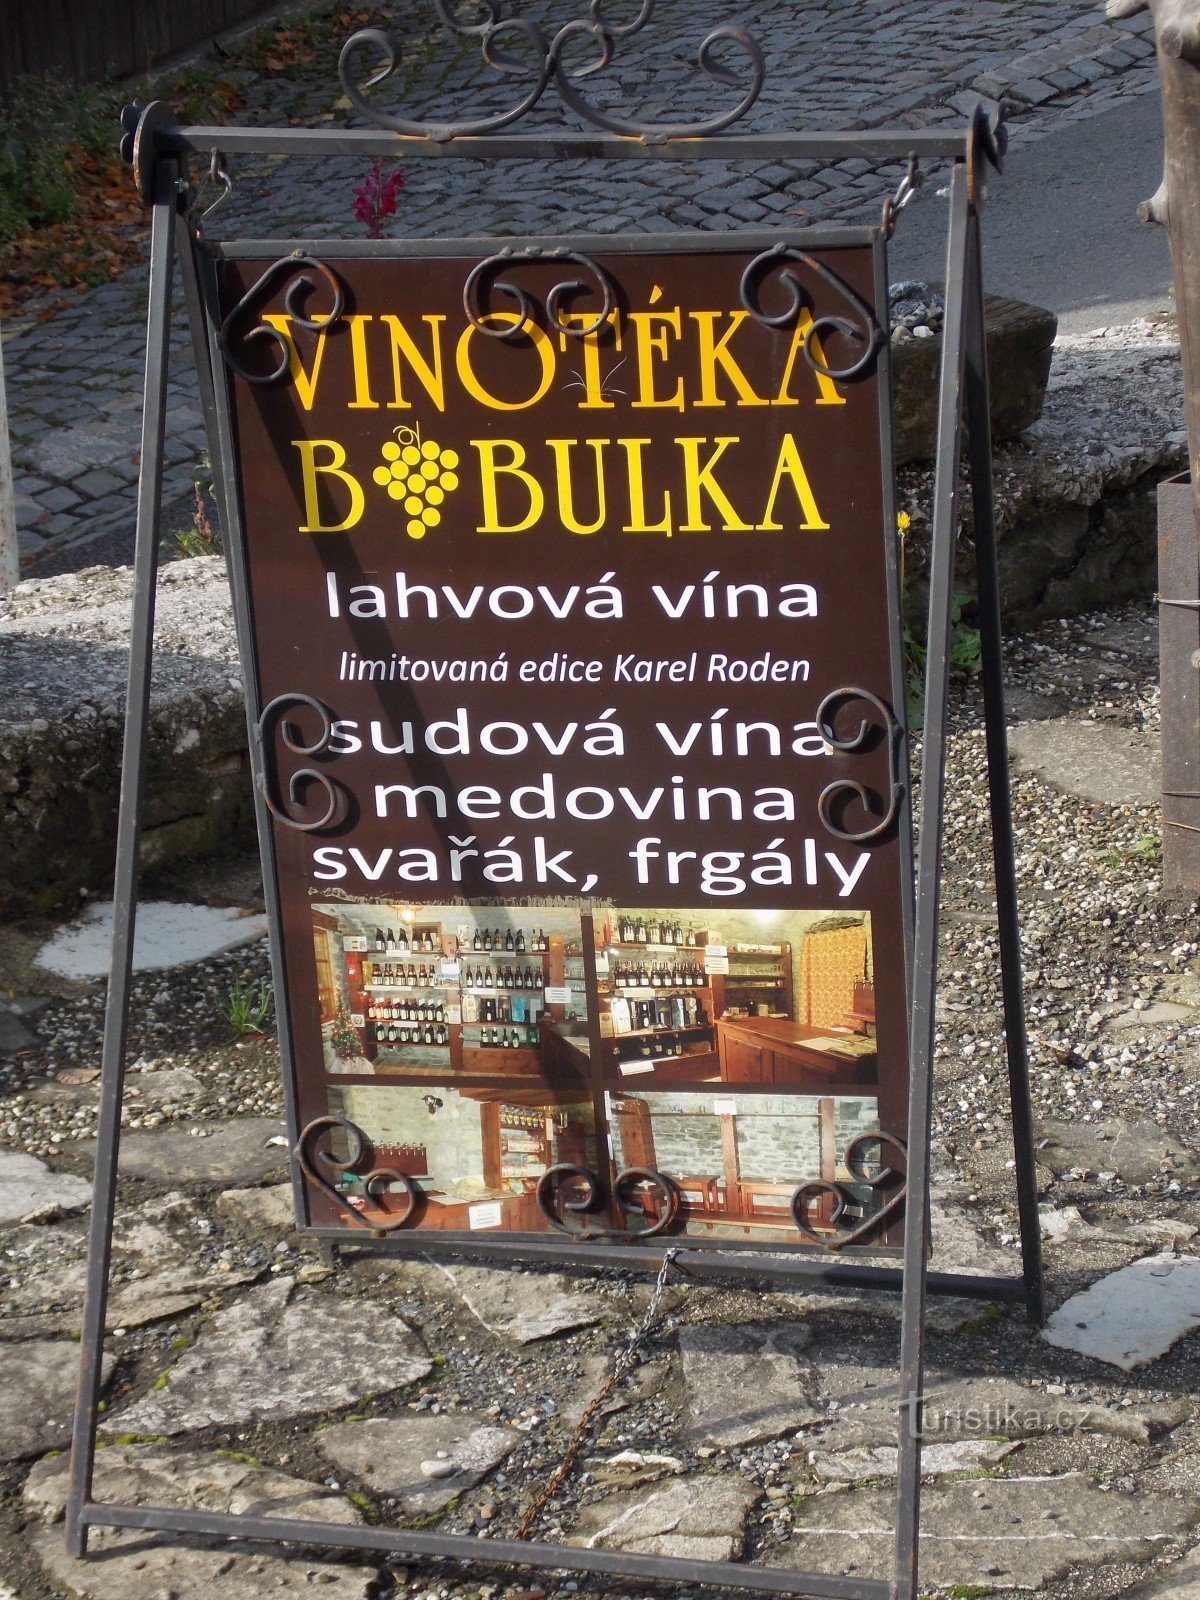 Για καλό κρασί, πηγαίνετε στο οινοποιείο Bobulka στο Štramberk